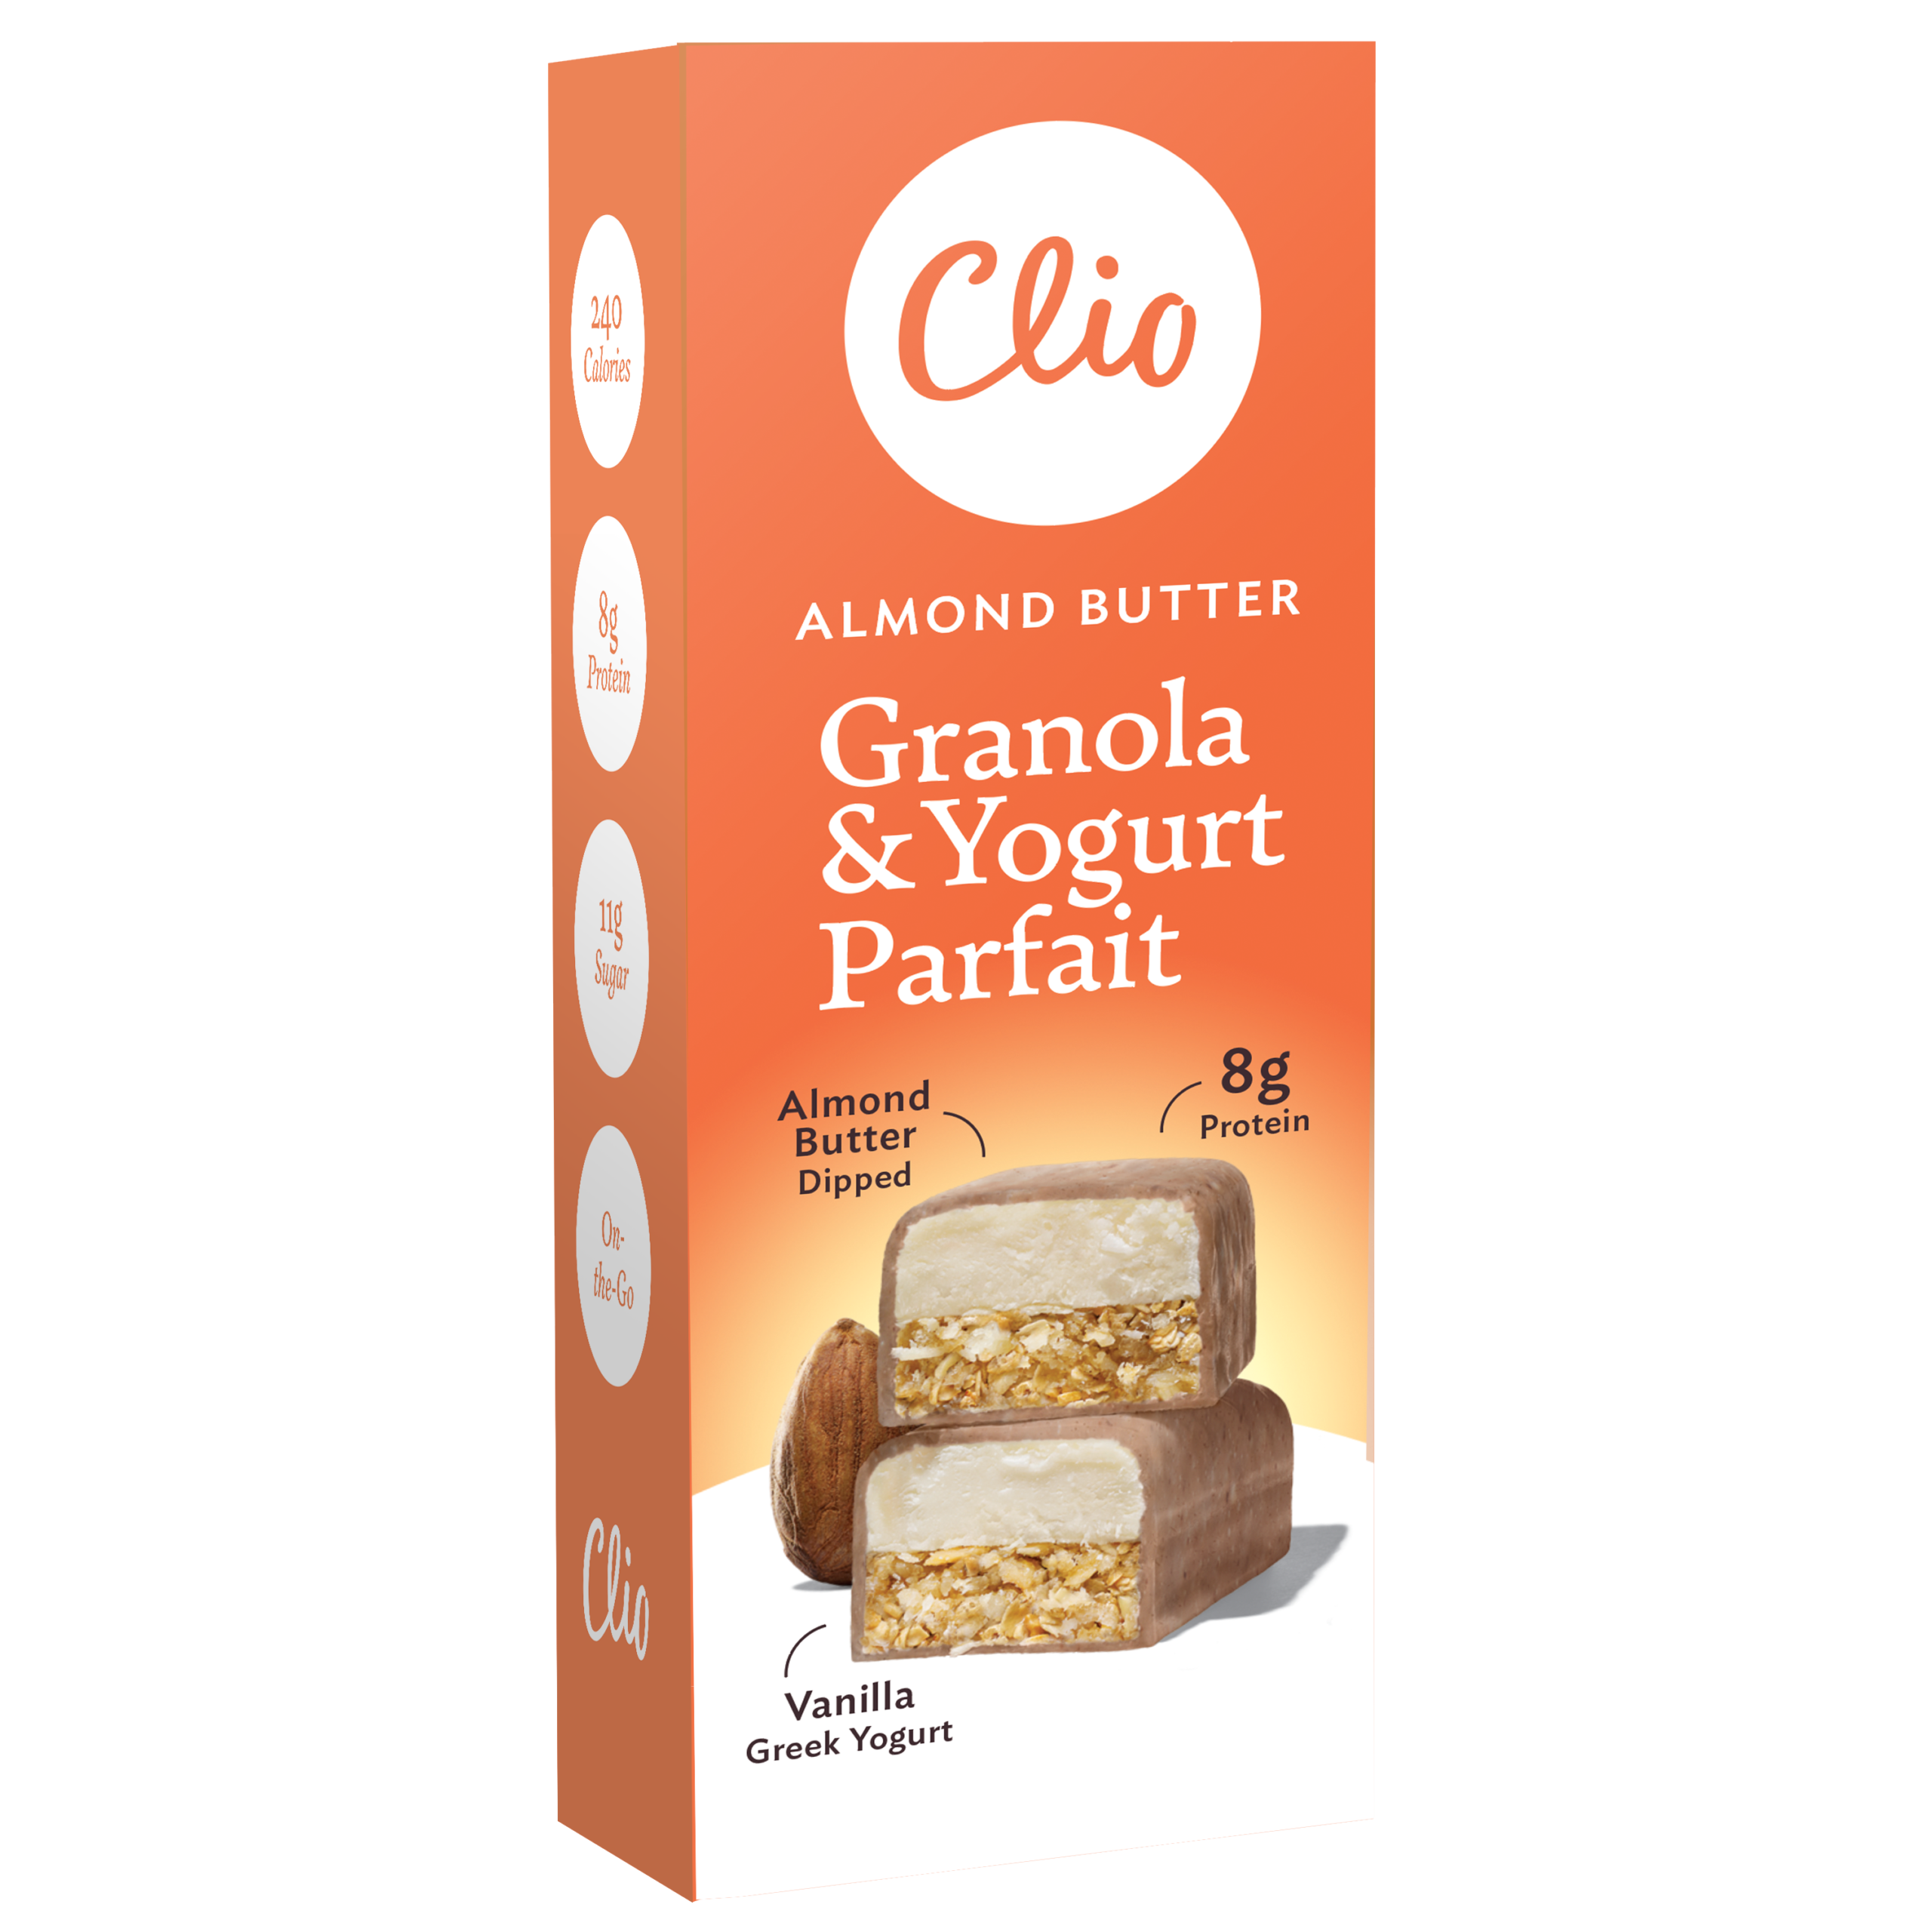 CLio-parfait_render-040921-almond-1